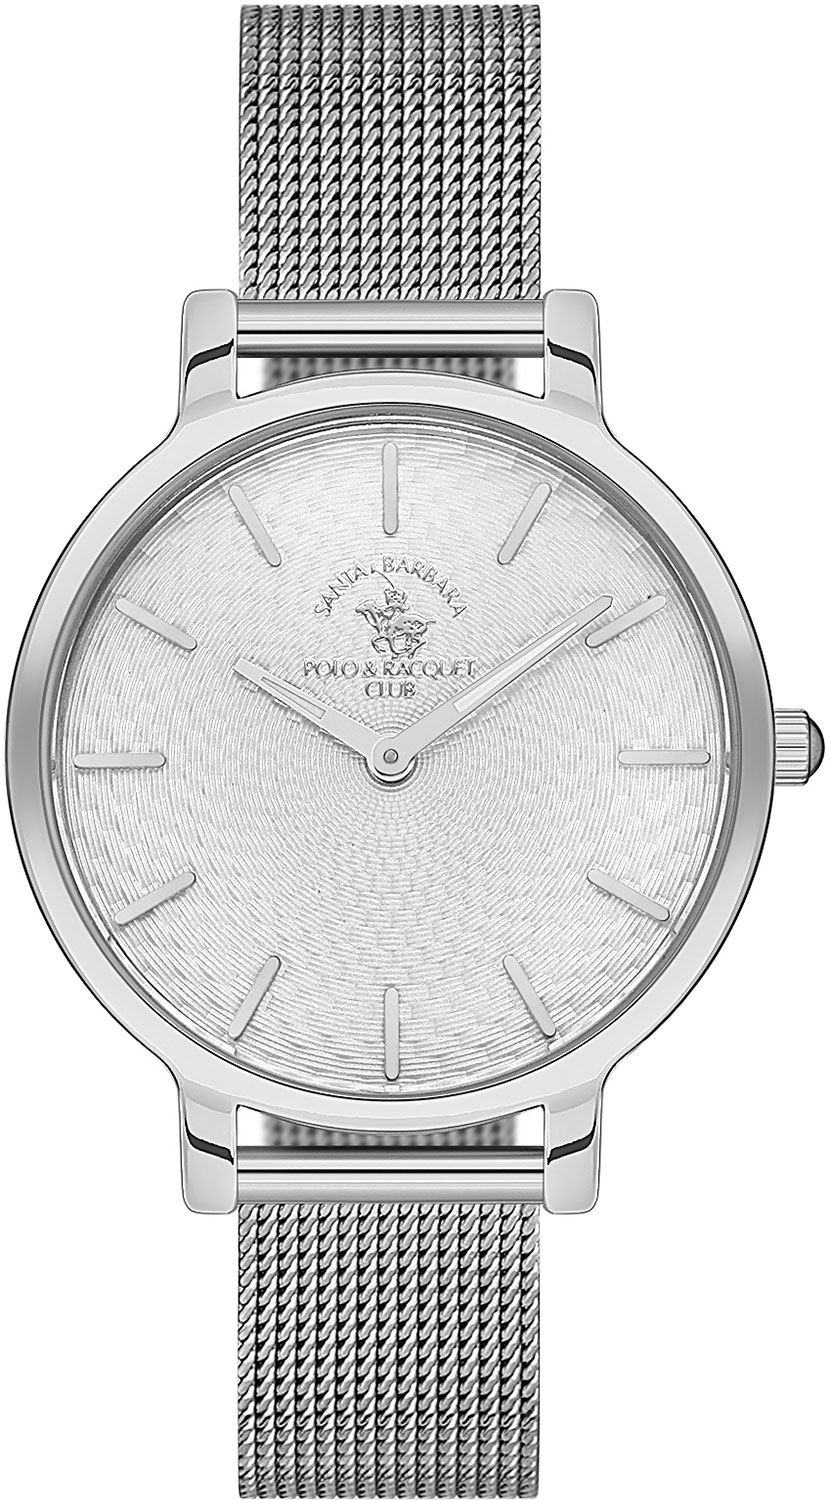 фото Наручные часы женские santa barbara polo & racquet club sb.1.10255-1 серебристые